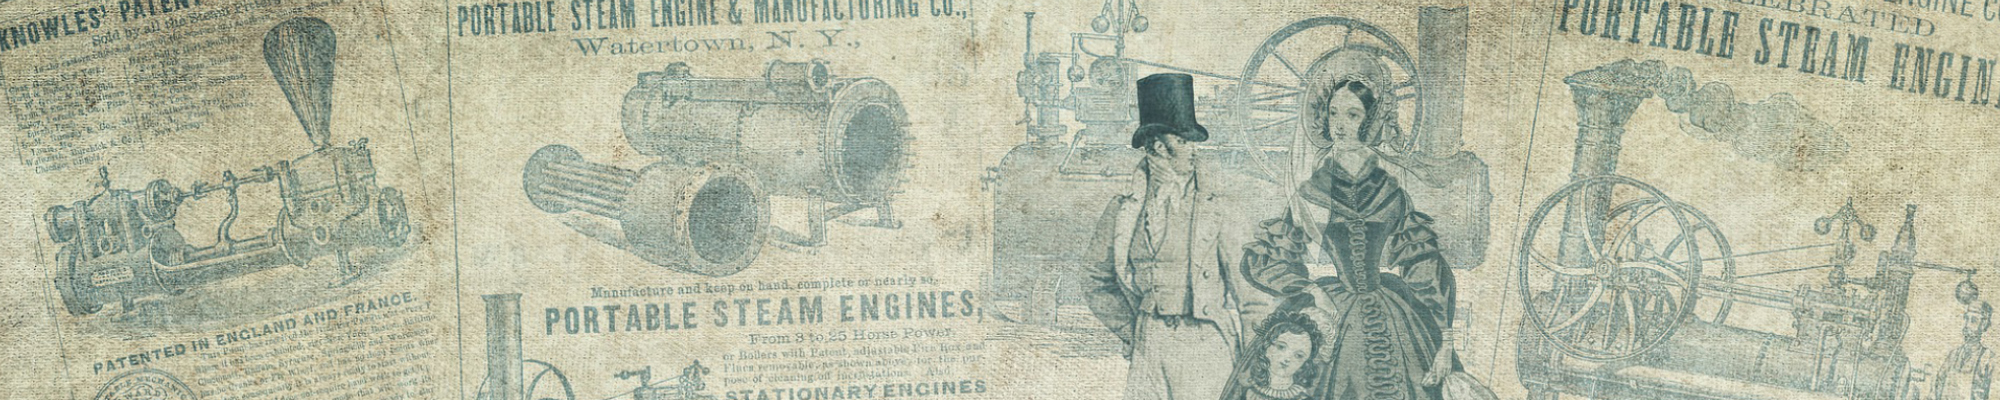 steam engine advertisements